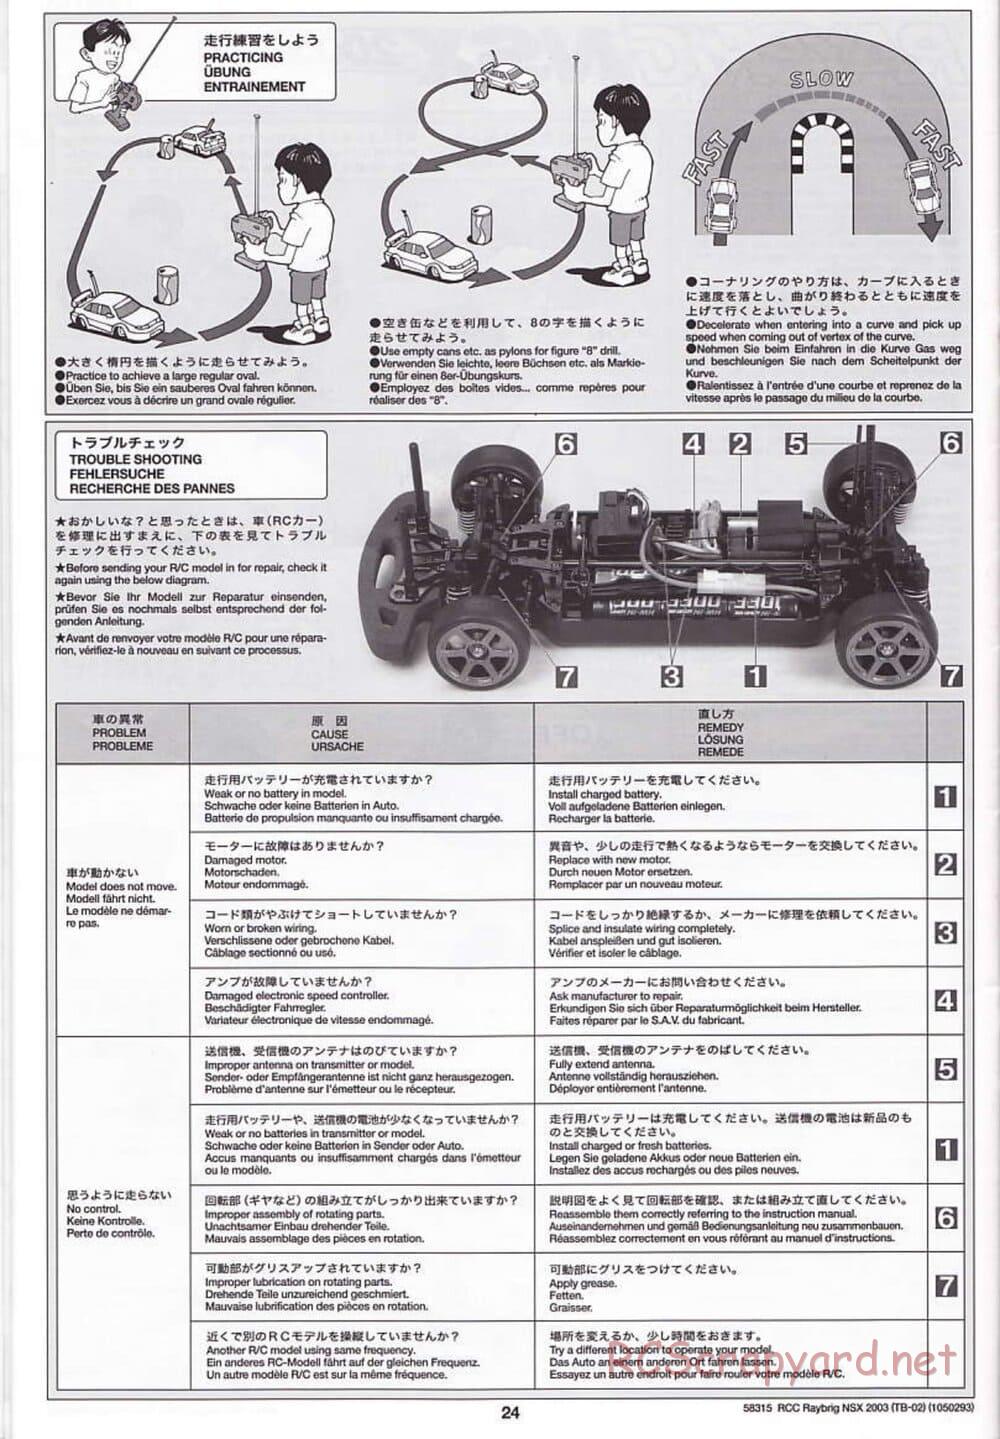 Tamiya - Raybrig NSX 2003 - TB-02 Chassis - Manual - Page 24